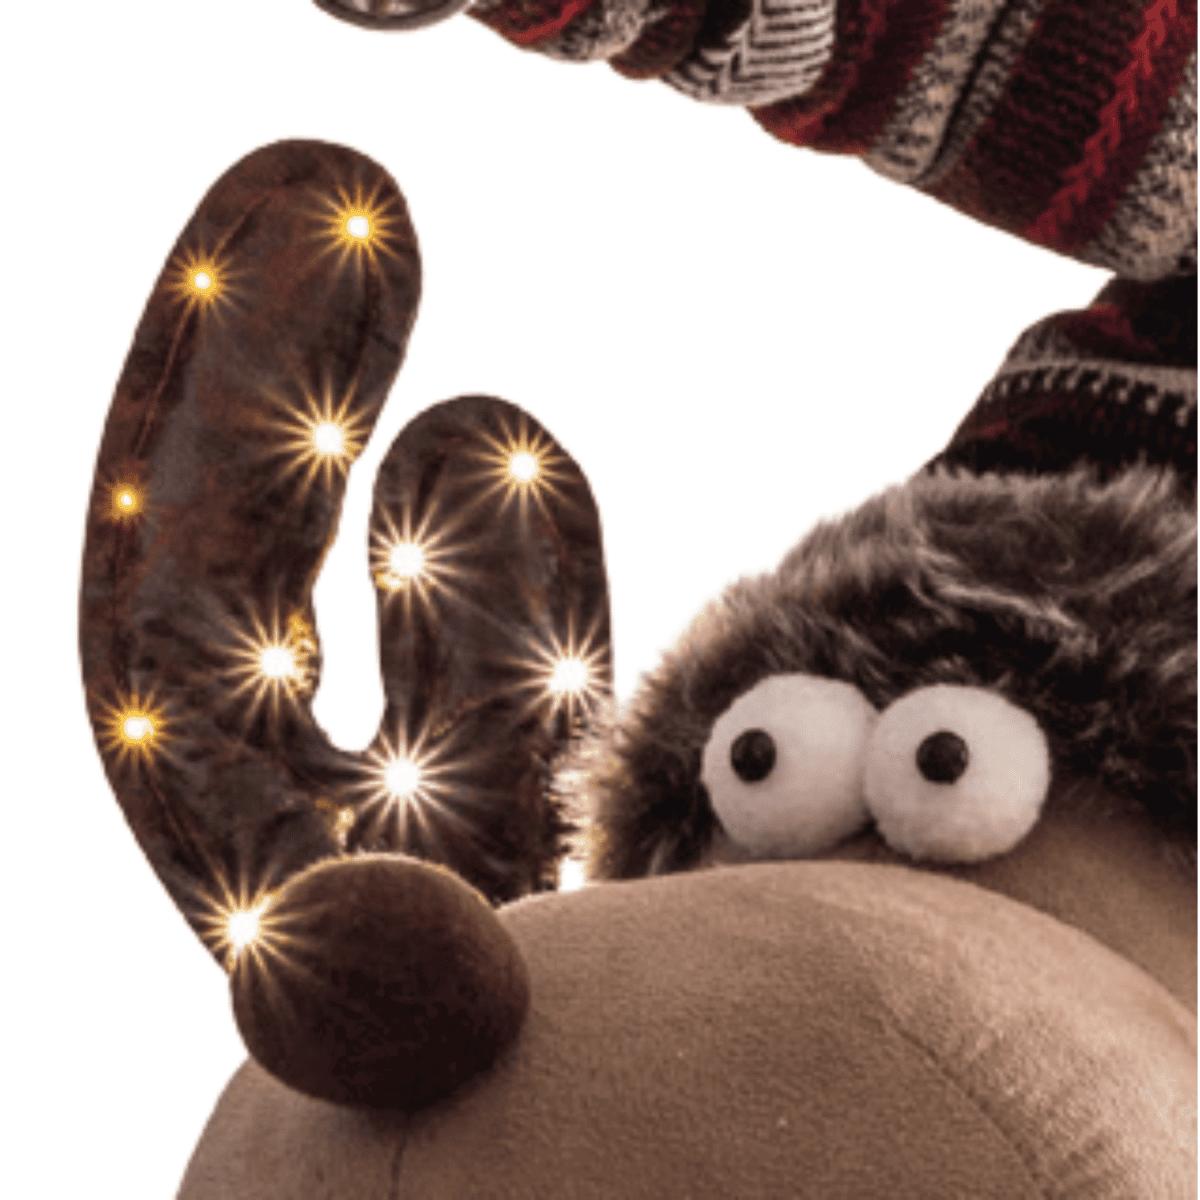 renna-rudolf-60-cm-pupazzi-natale-cavalluccio-decorazioni-natalizie-corna-luminose